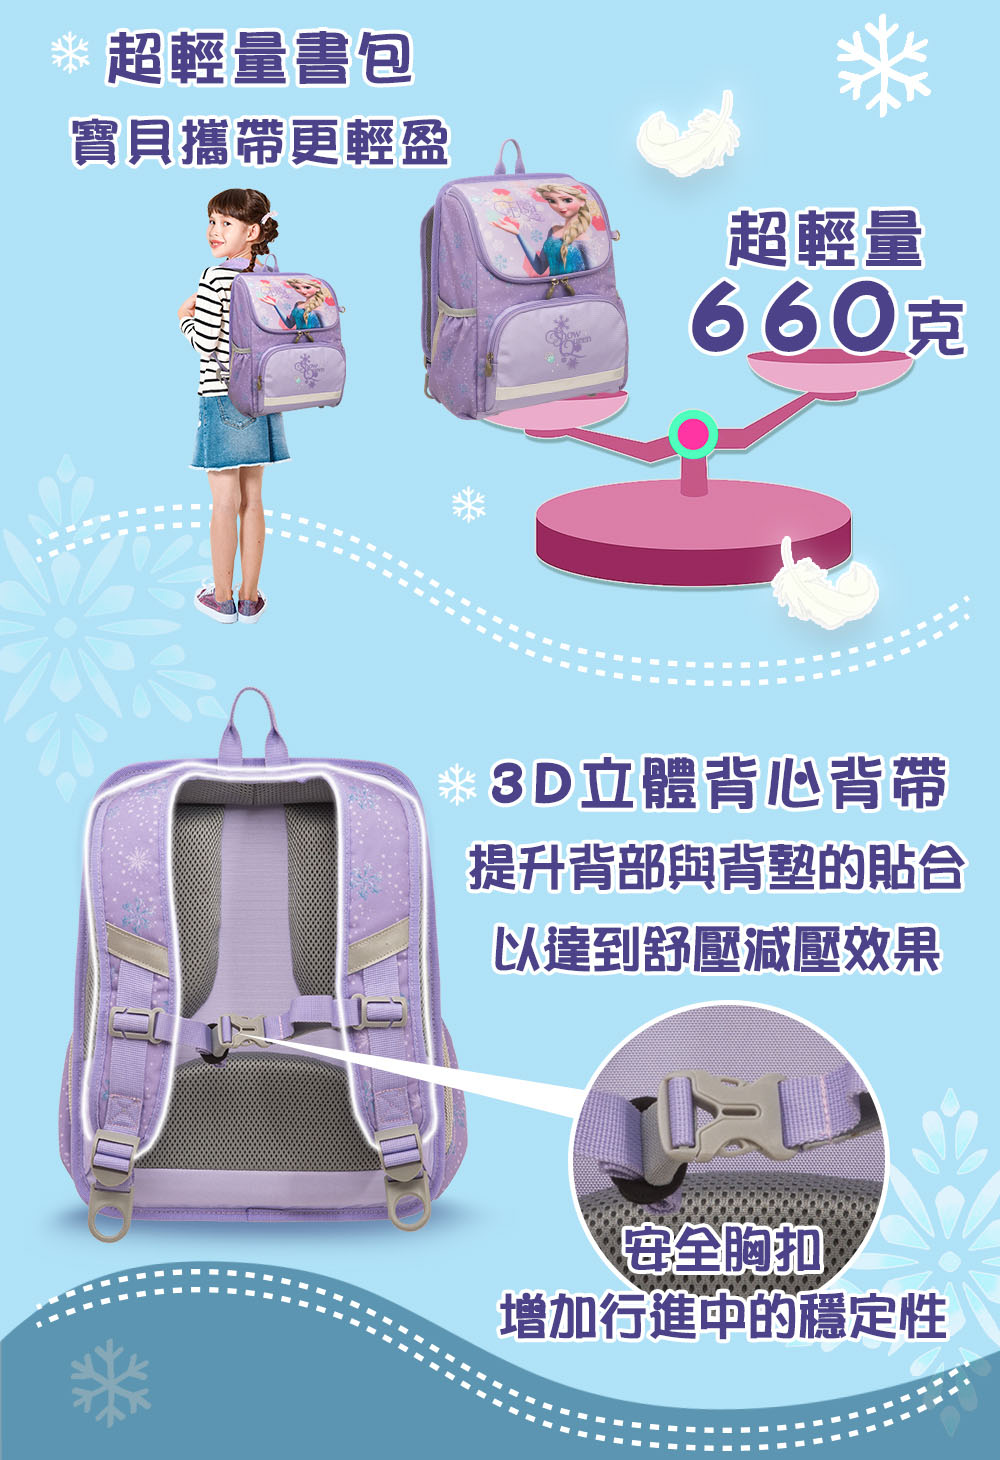 【經典卡通】冰雪奇緣超輕量護脊書包 Ⅲ#粉紫色 IMFZ606PL